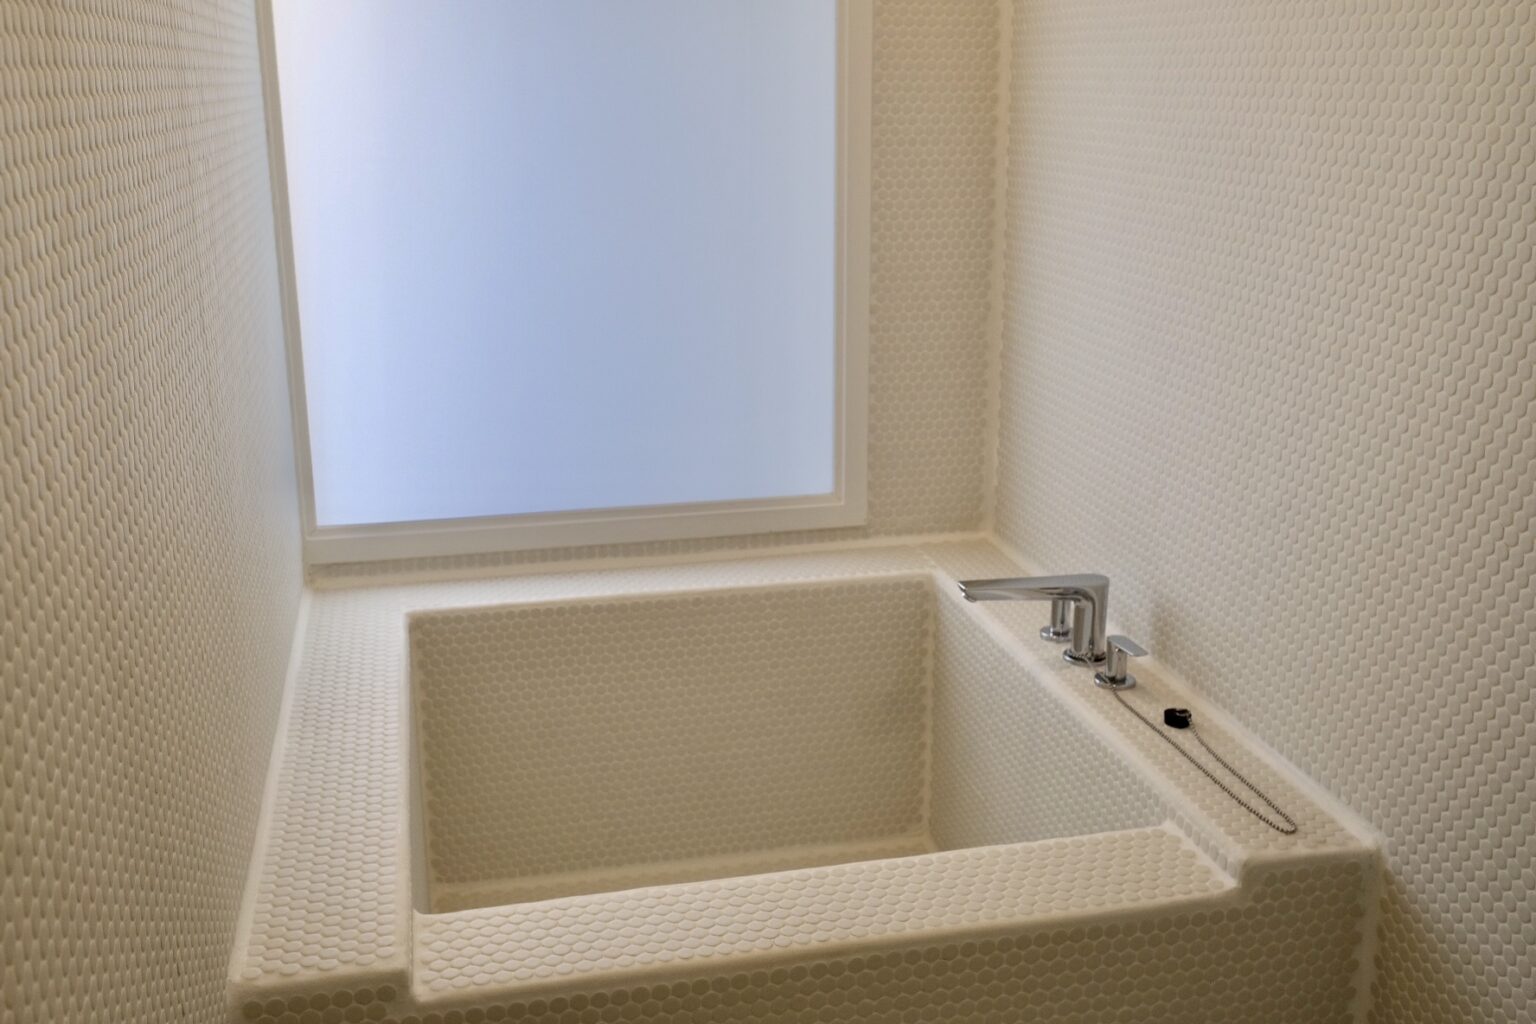 1ベッドルームの場合シャワールームにバスタブ付き。磨りガラスから光が差し込む造りになっている。